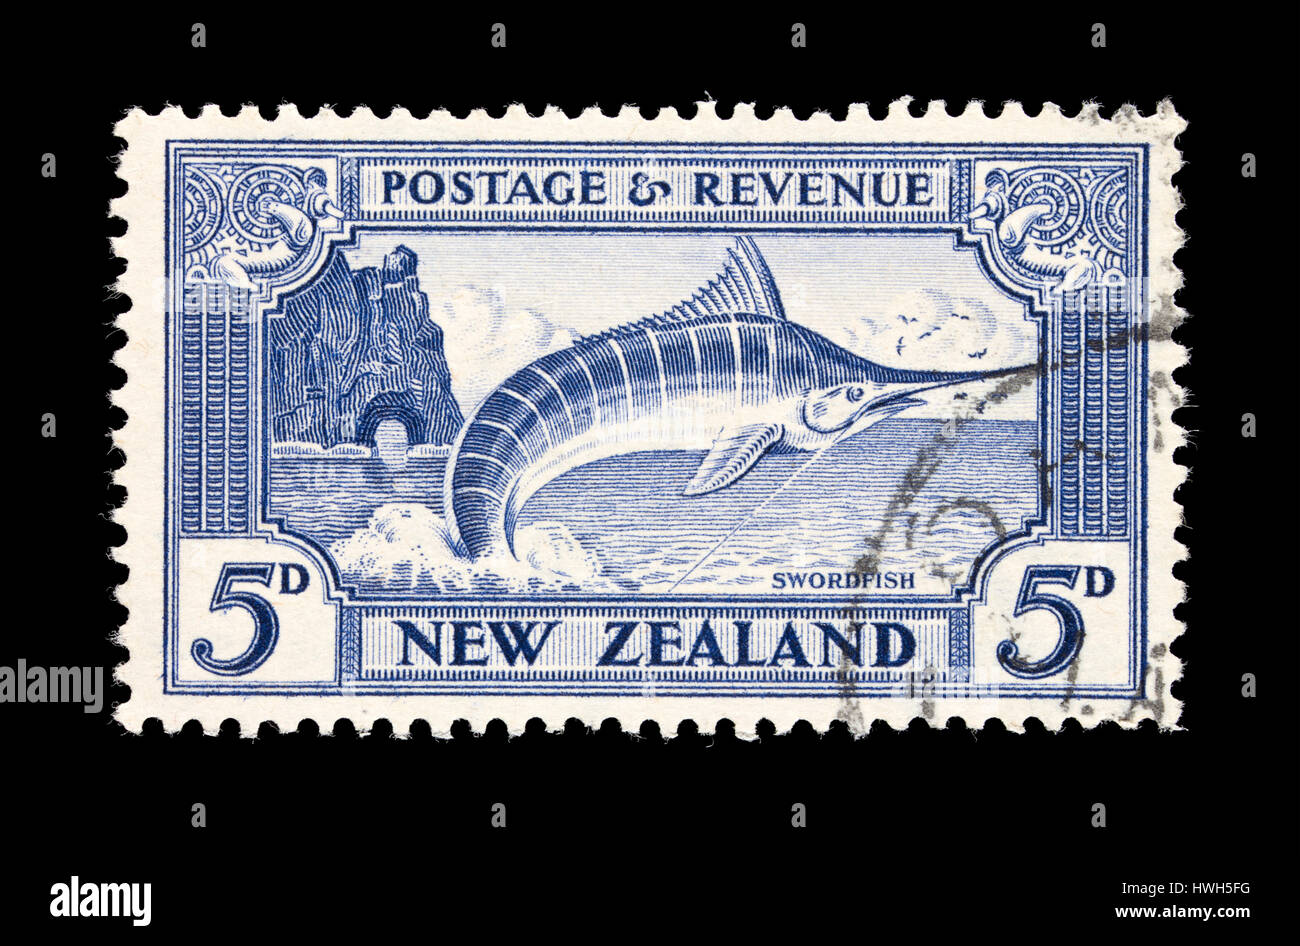 Timbre-poste de Nouvelle-zélande représentant un saut de l'espadon, après avoir été capturé par un pêcheur sportif. Banque D'Images